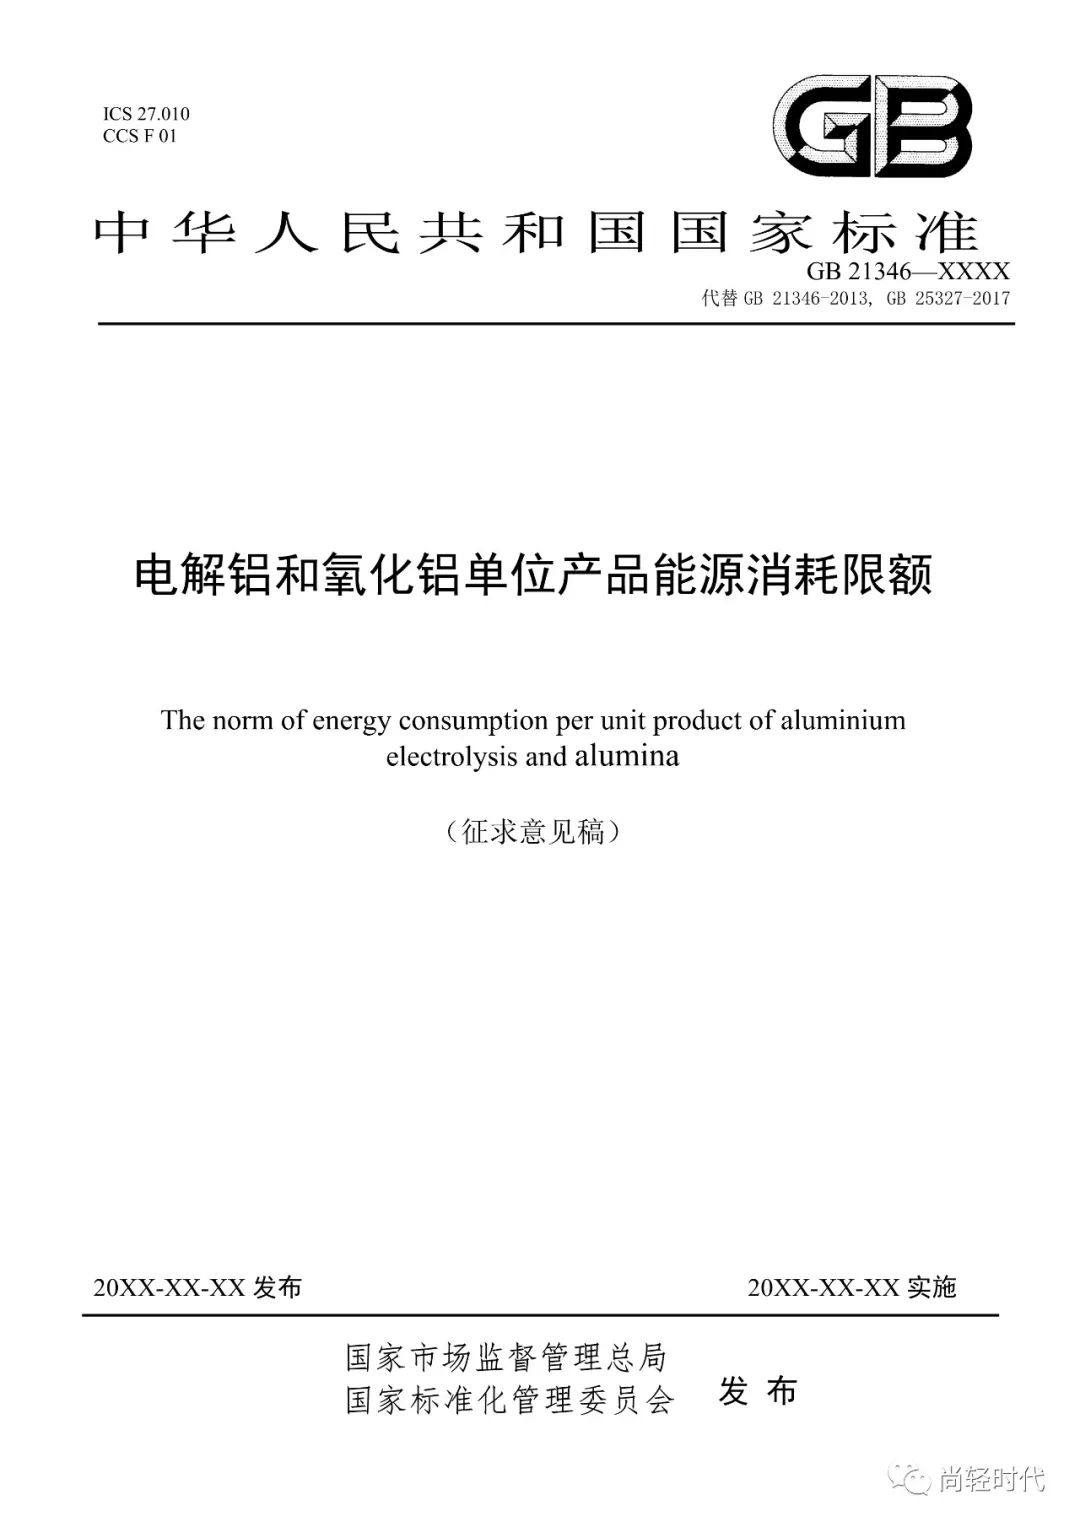 《电解铝和氧化铝单位产品能源消耗限额》国家标准修订 开始征求意见